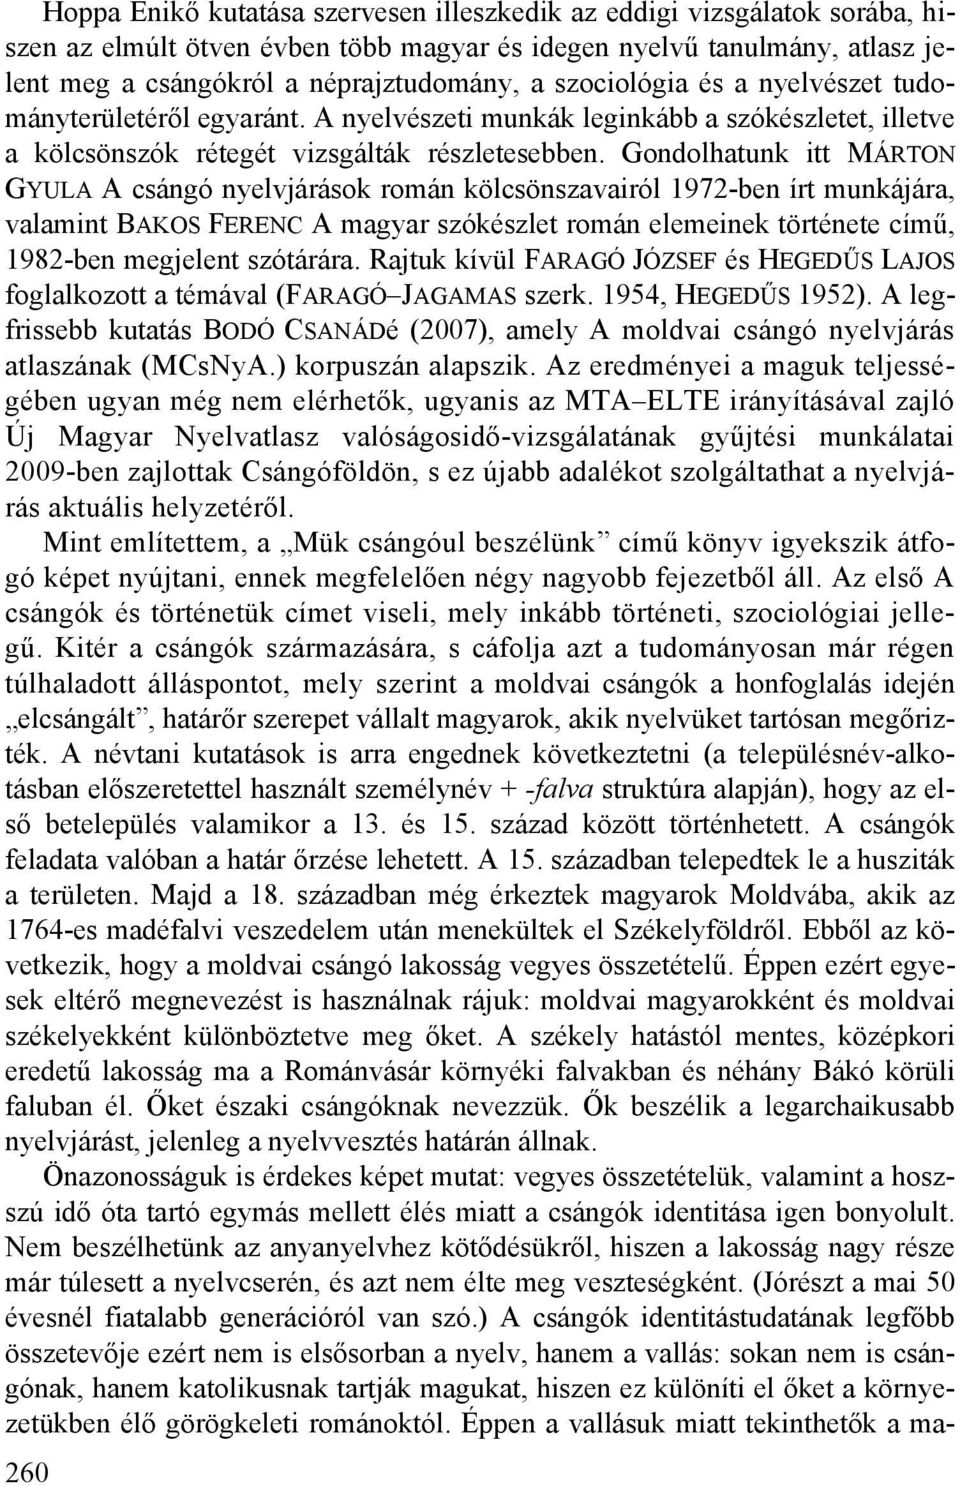 Gondolhatunk itt MÁRTON GYULA A csángó nyelvjárások román kölcsönszavairól 1972-ben írt munkájára, valamint BAKOS FERENC A magyar szókészlet román elemeinek története című, 1982-ben megjelent